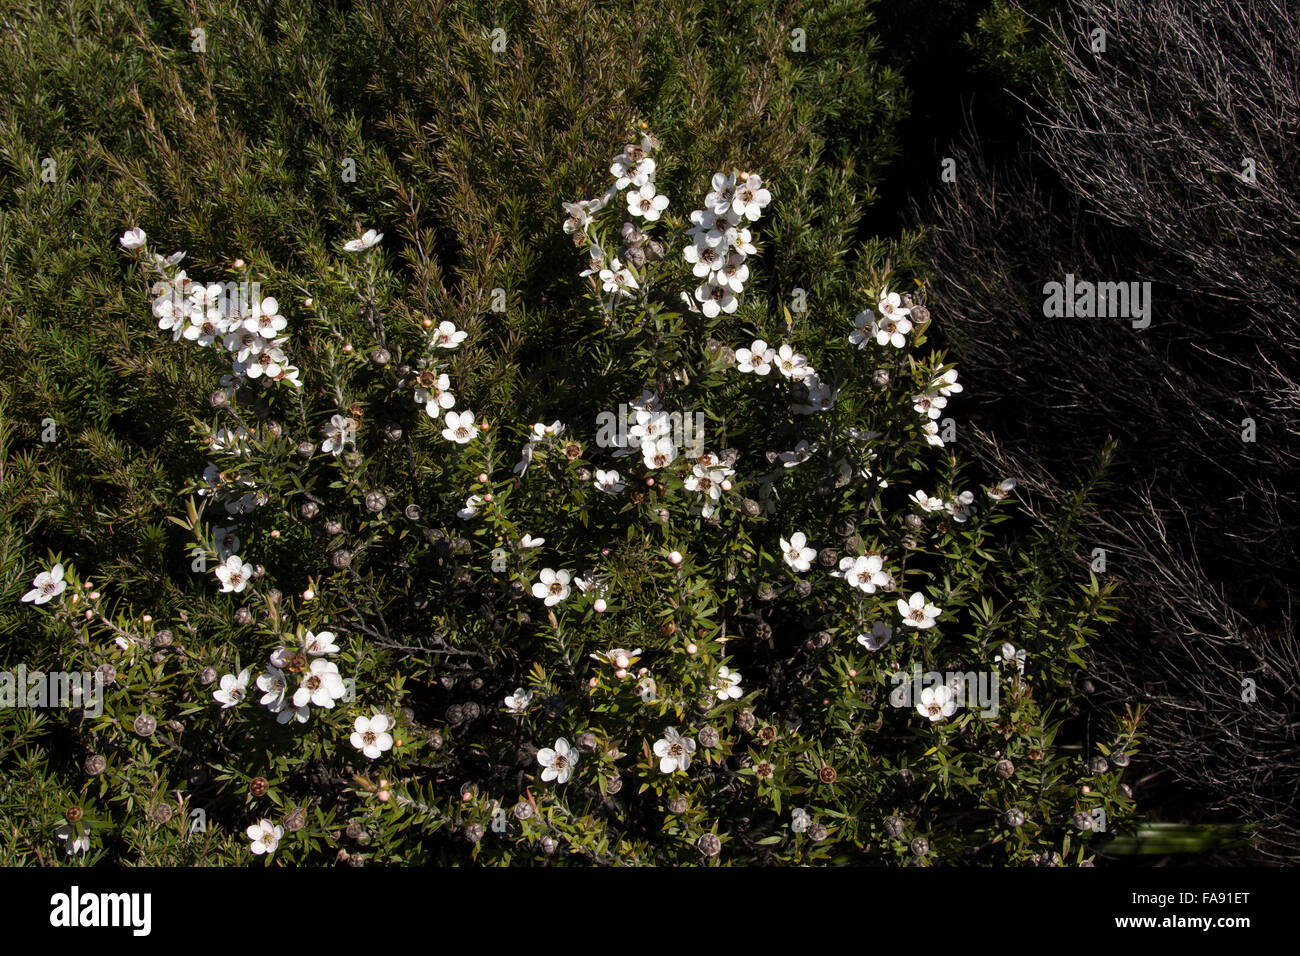 In trockenen Regionen von Neuseeland Manuka Busch wächst Leptospermum Scoparium. Die einheimische Pflanze ist die Quelle für Honig. Stockfoto